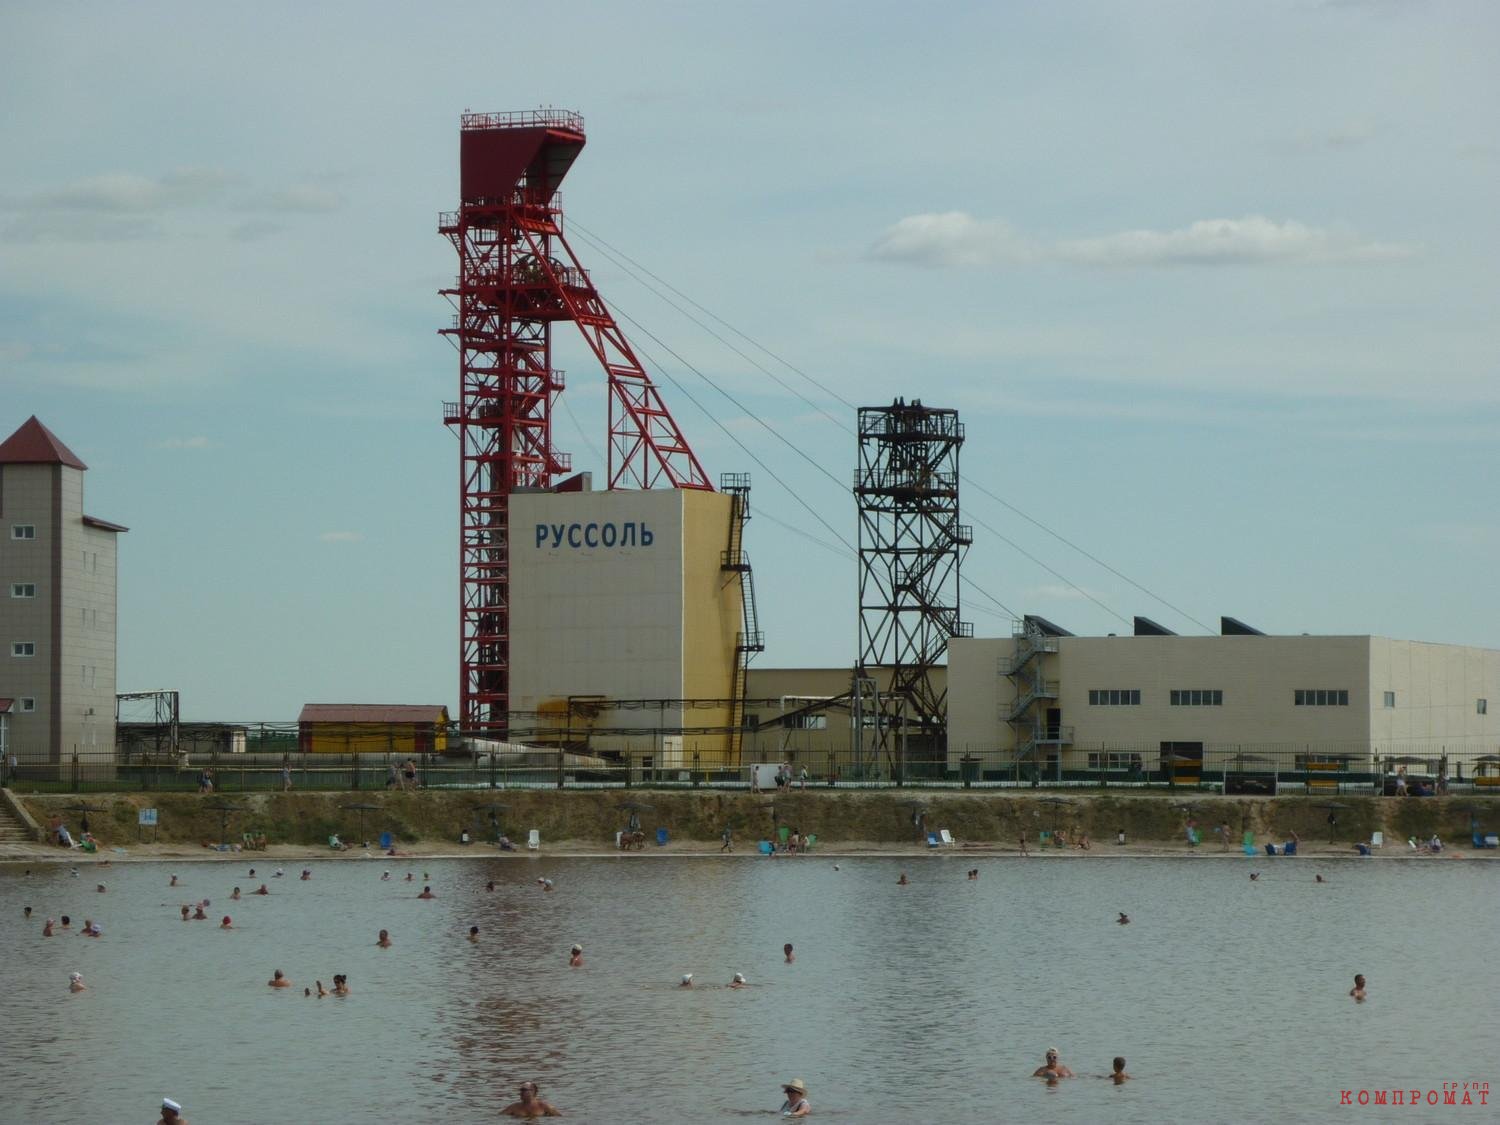 "Руссоль" Чёрного — крупнейший соляной холдинг в России